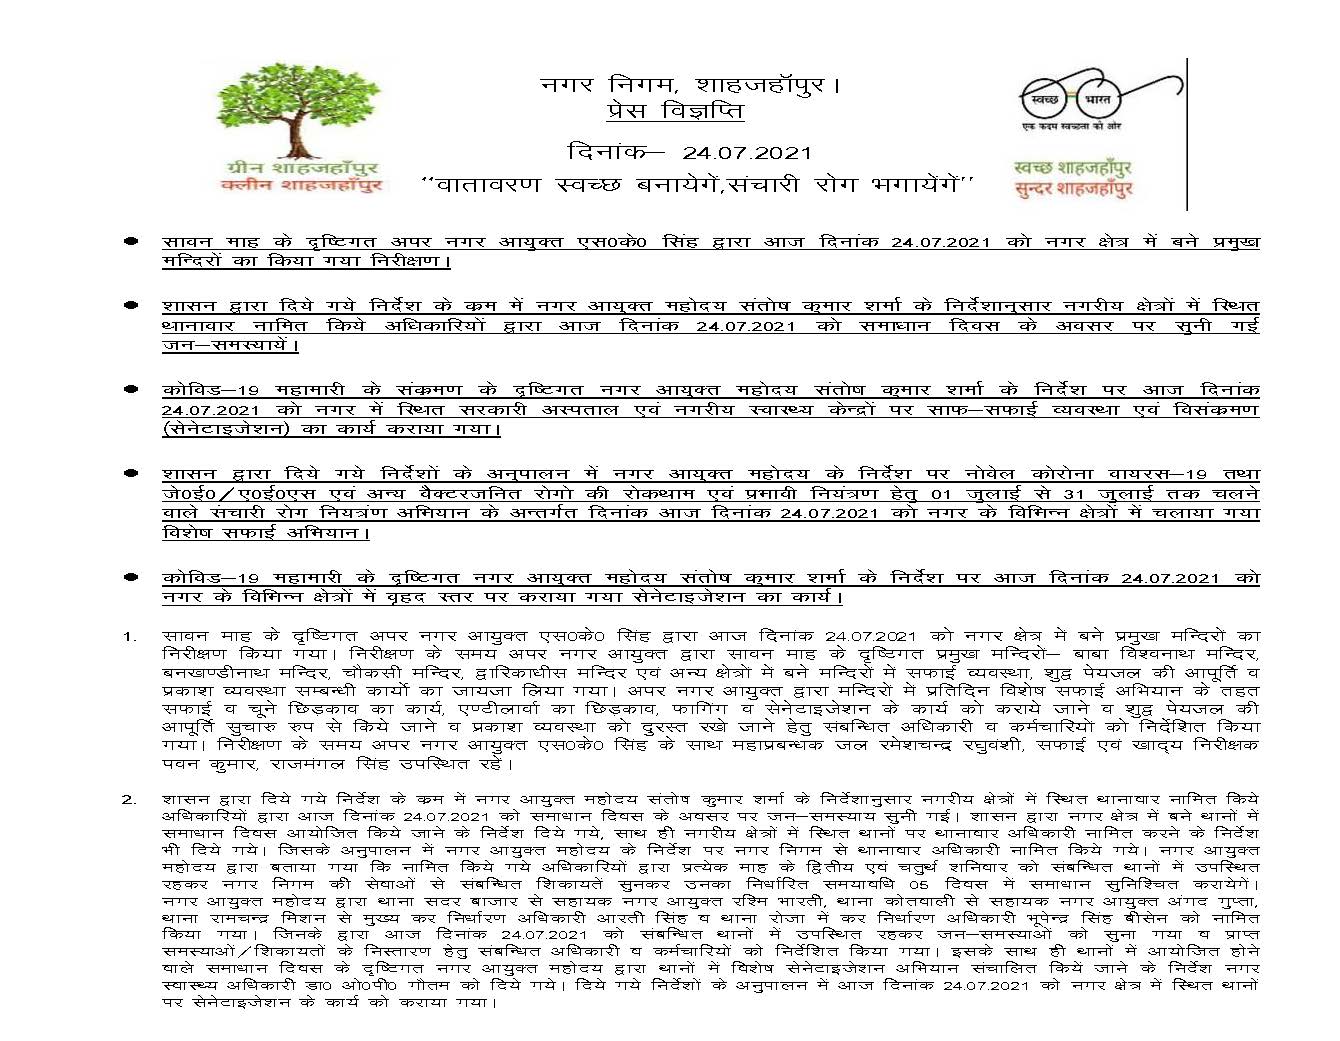 news 24-07-2021 – सावन माह के दृष्टिगत अपर नगर आयुक्त महोदय द्वारा दिनांक 24-07-2021 को नगर के प्रमुख मंदिरों का निरीक्षण किया गया।